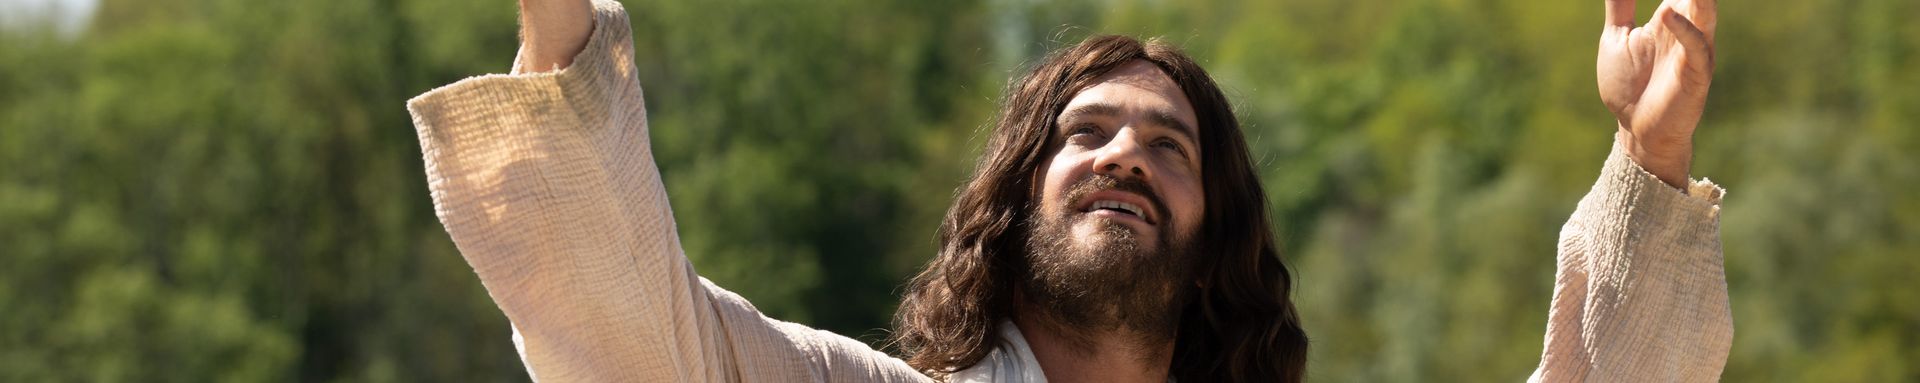 La RTS diffuse la série "La vie de J.C." depuis le 18 septembre 2021 avec Vincent Veillon dans le rôle de Jésus Christ | © RTS